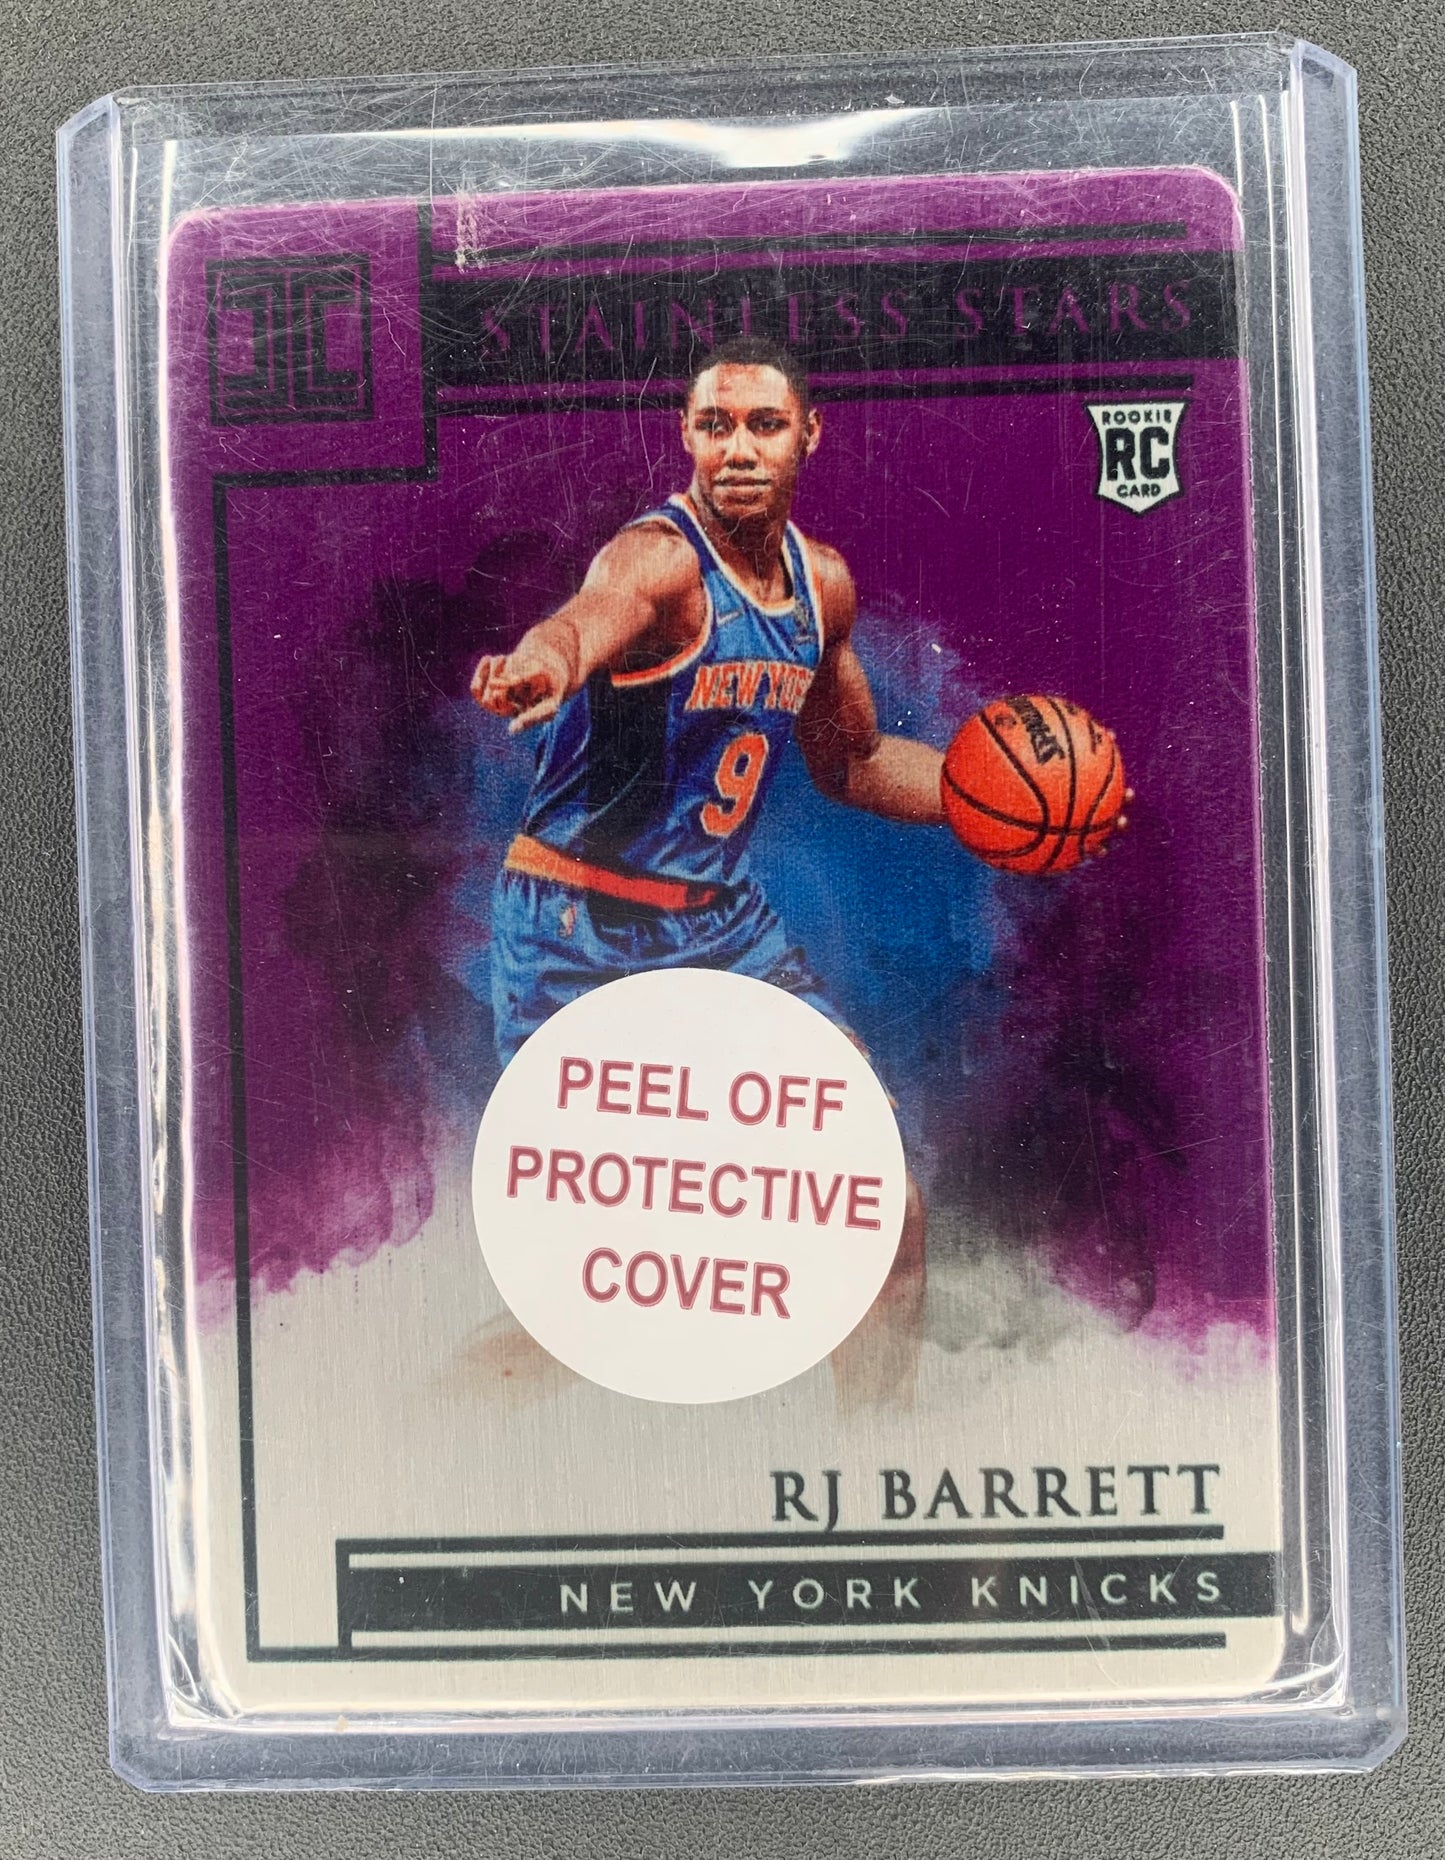 2019/20 Panini Impeccable #1 RJ Barrett, New York Knicks Purple  46/49